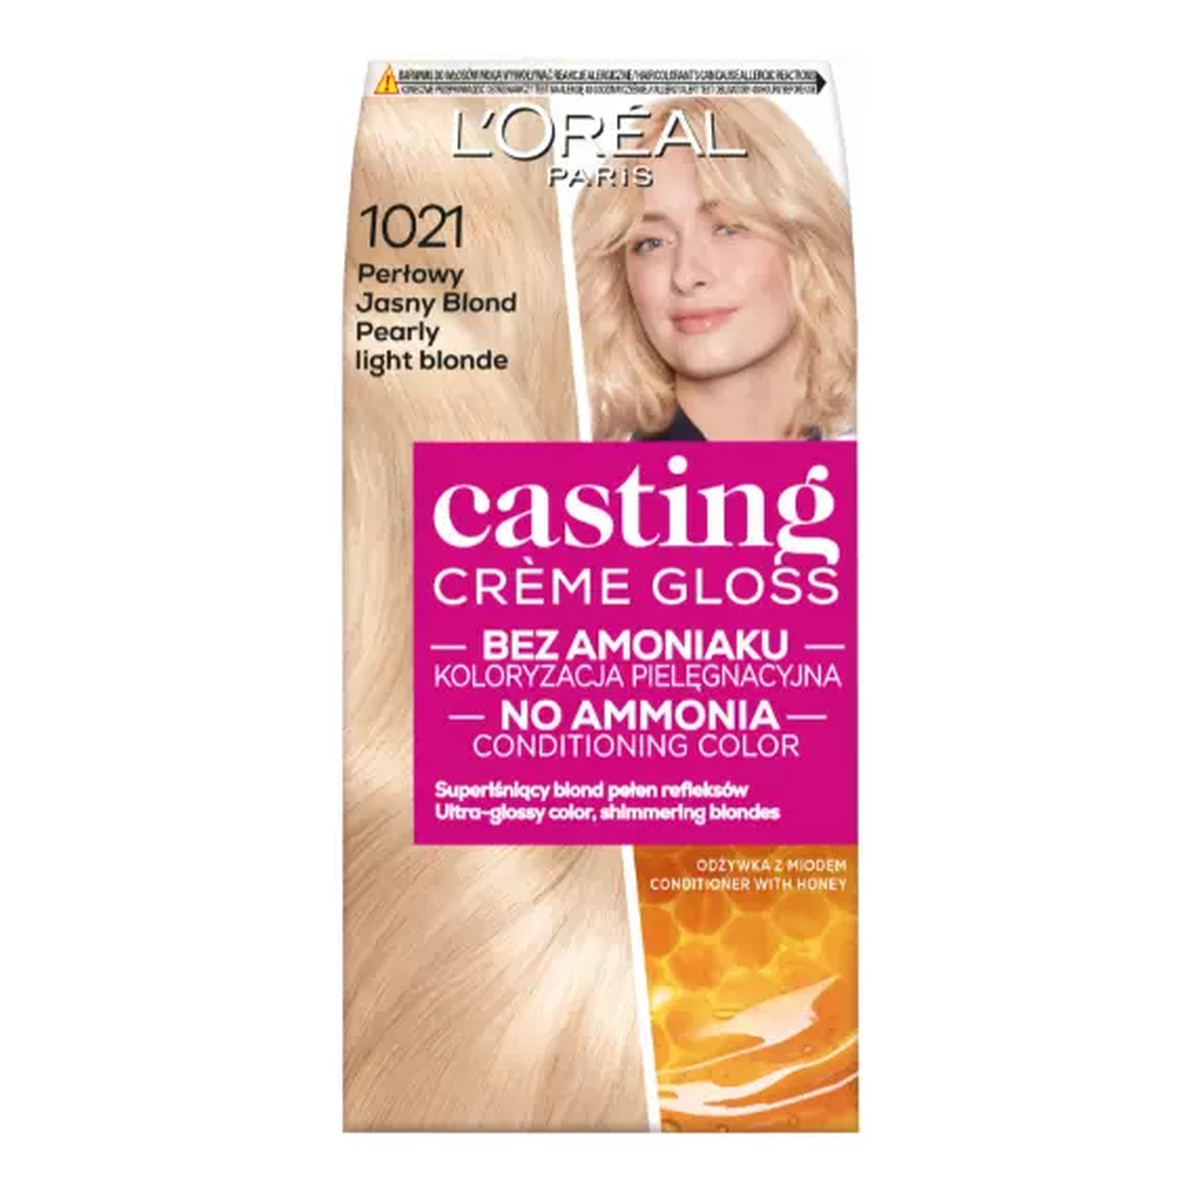 szampon koloryzujacy loreal jasny perlowy blond